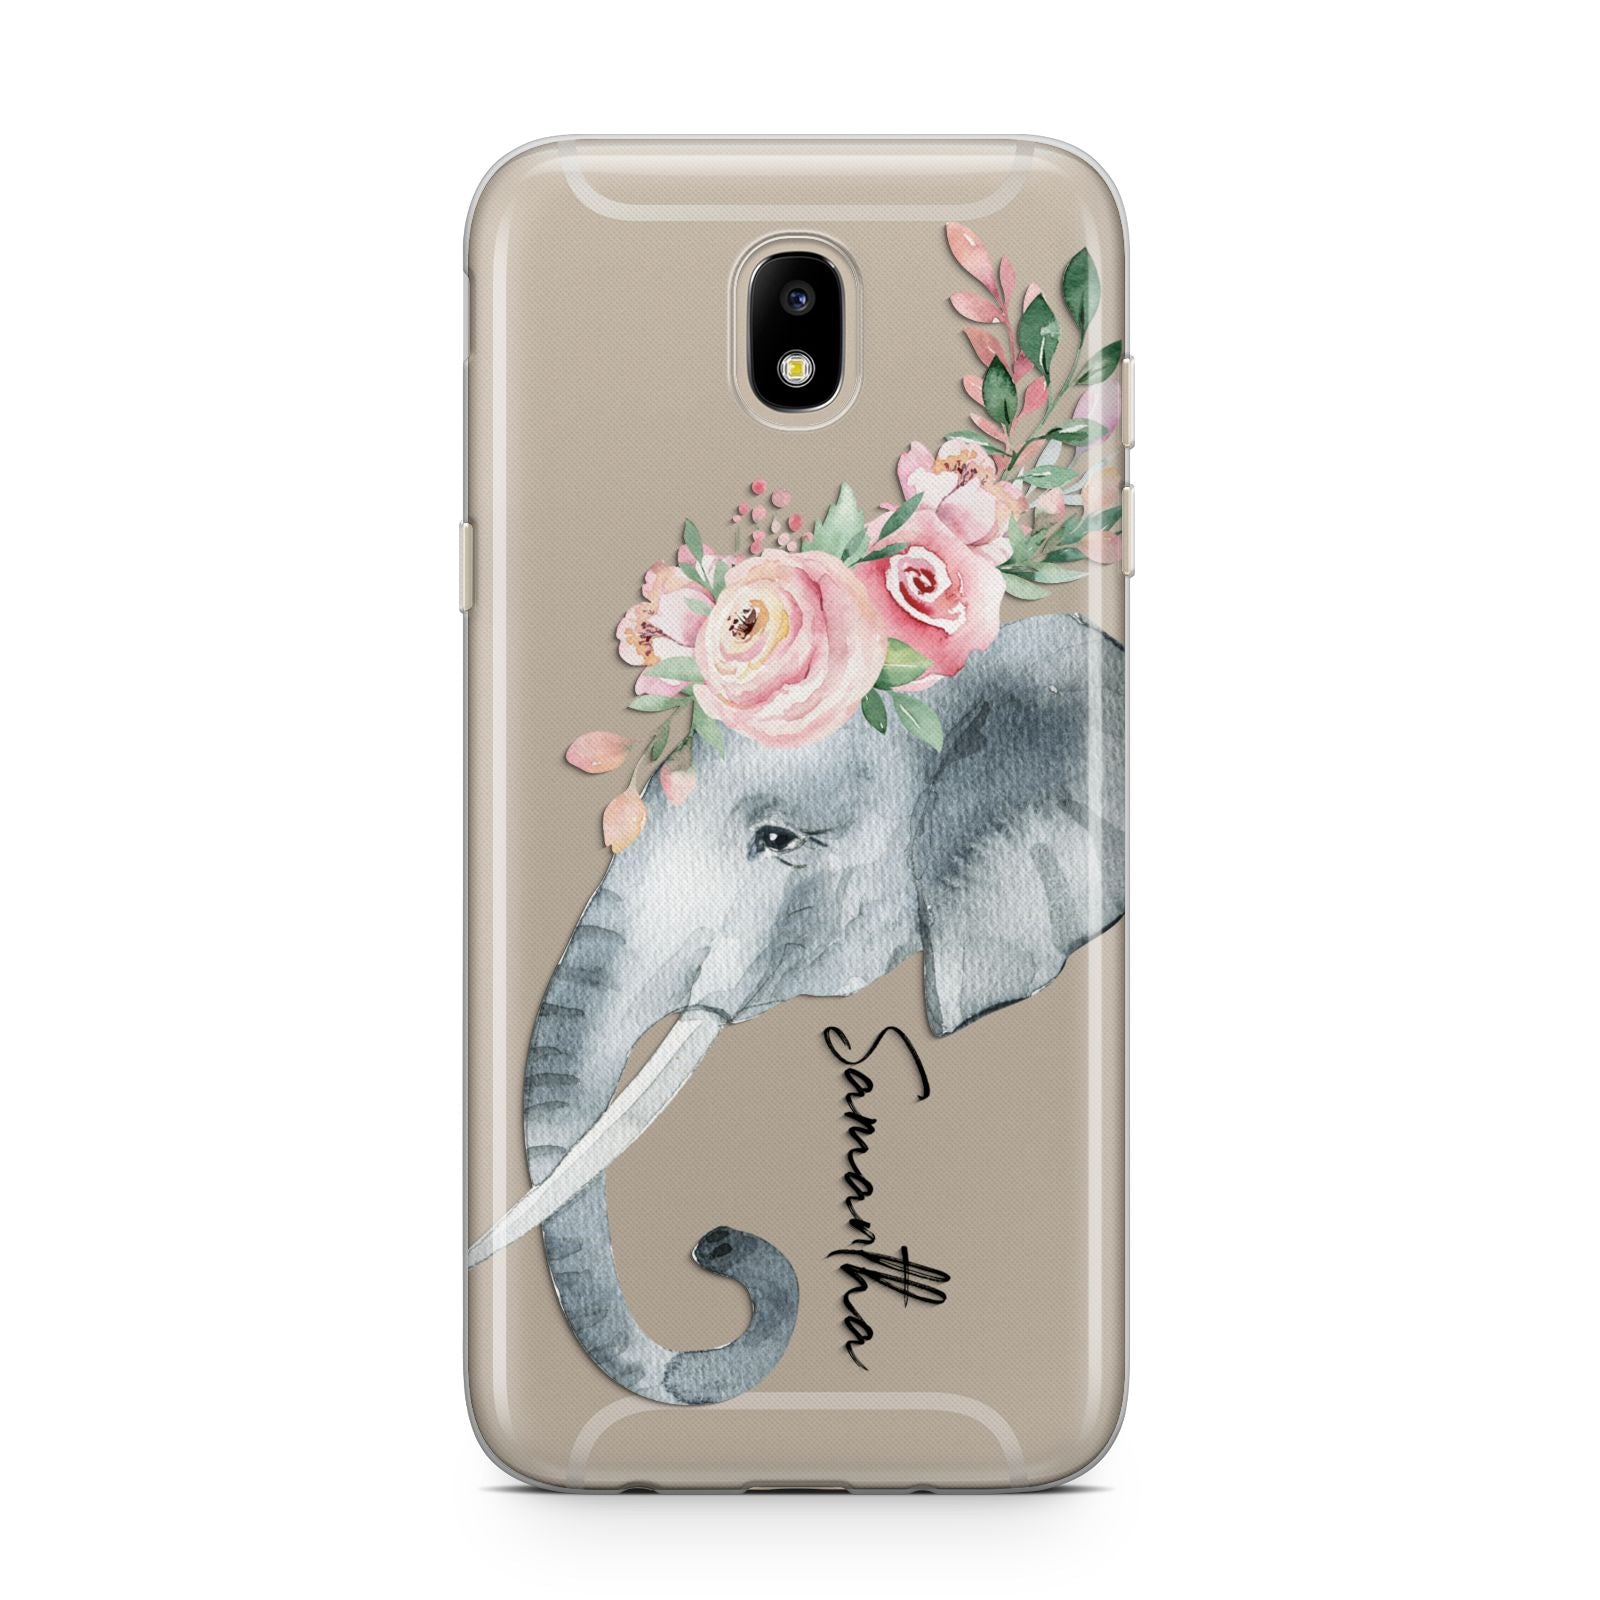 Personalised Elephant Samsung J5 2017 Case